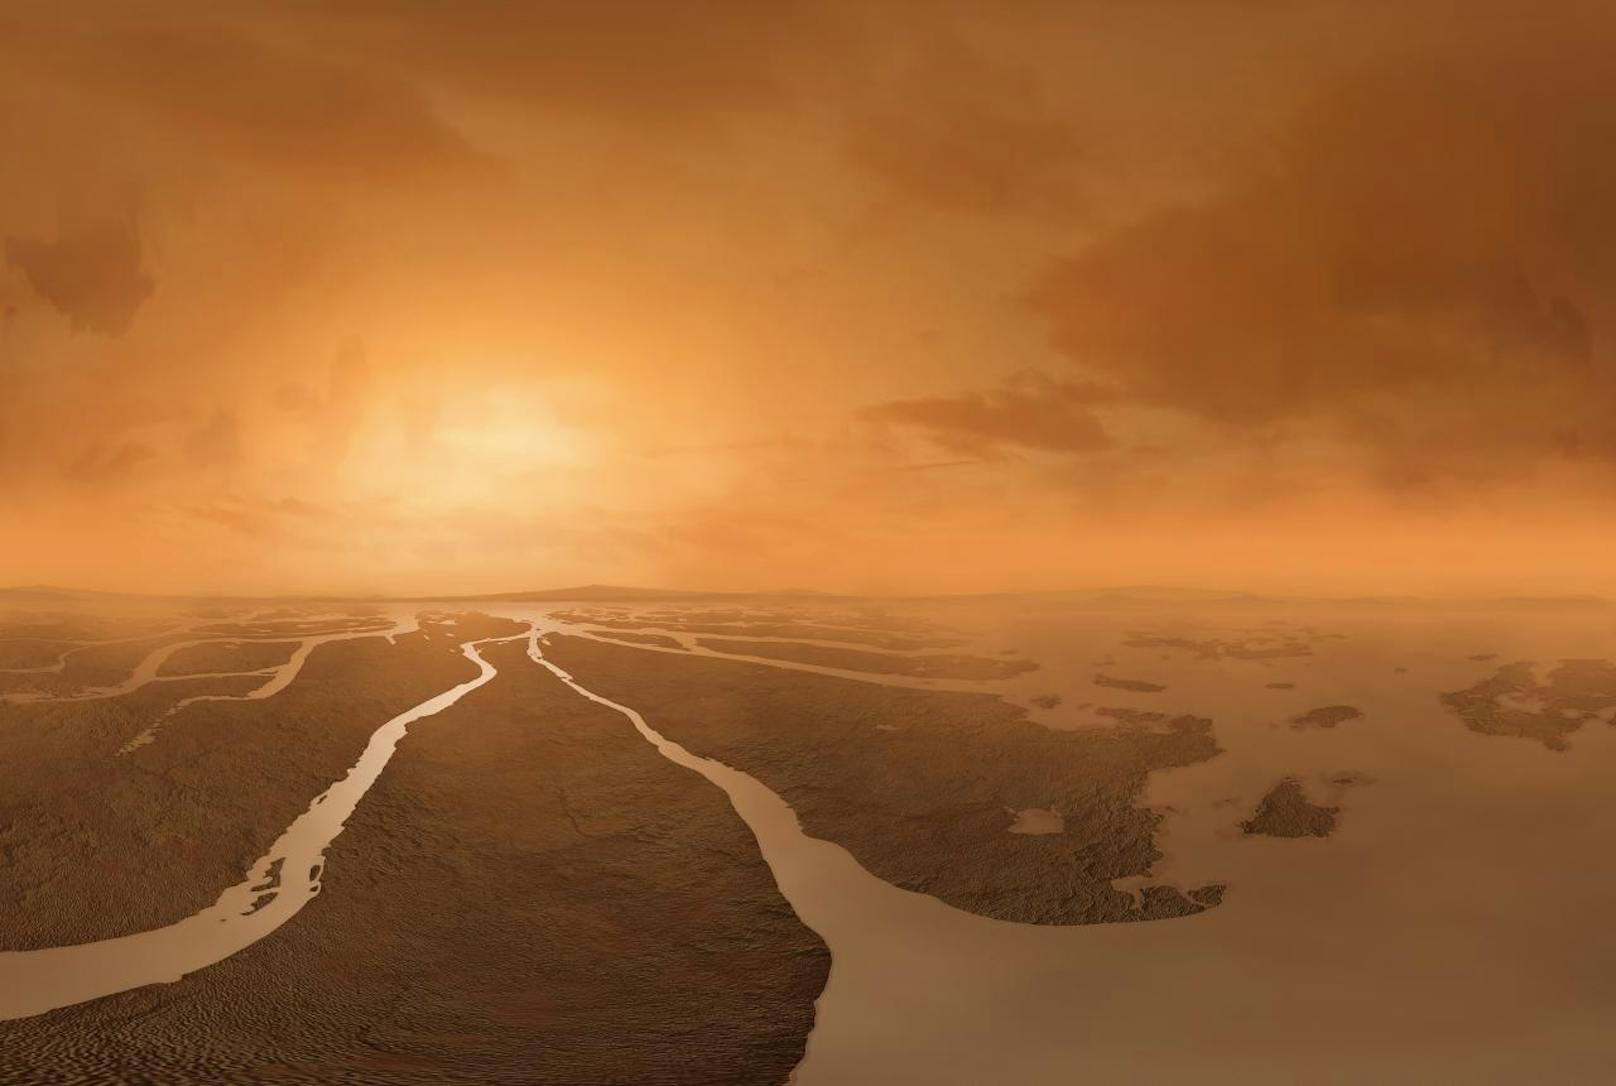 Der orangefarbene Titan ist der erdähnlichste Himmelskörper in unserem Sonnensystem. Der größte Saturnmond hat einen Durchmesser von 5.150 Kilometern ? deswegen auch der Name in Analogie zu dem Göttergeschlecht der Titanen. Was hat der sogenannte Eismond zu bieten? Eine sehr dichte Atmosphäre, einen warmen Kern, circa 80 Kilometer Eiskruste, -180 °C, vielleicht Wasser, aber definitiv flüssiges Methan, weswegen er als der ?giftige Zwilling? der Erde bezeichnet wird.
Chancen zu überleben: 40